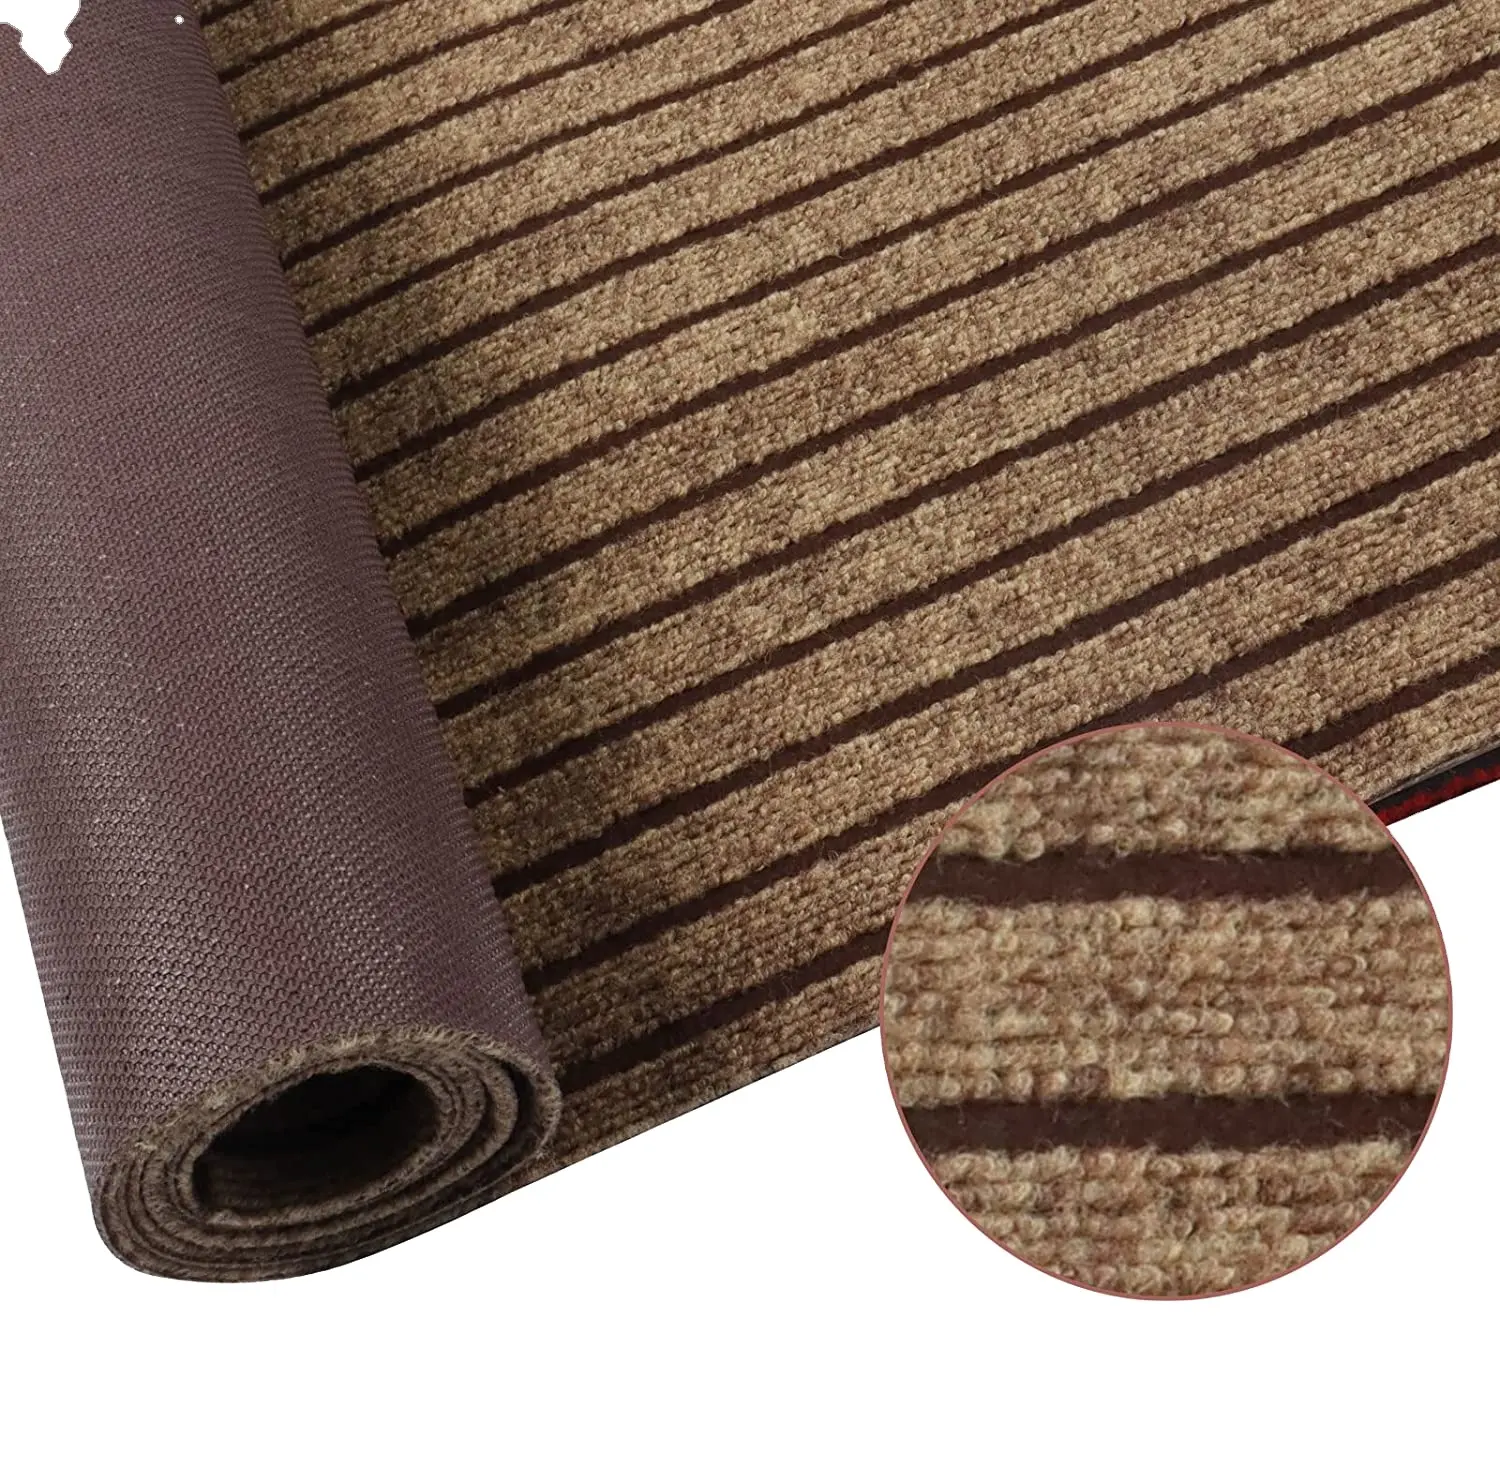 YIJIA hot sell Best sales polyester floor mat seven stripes door mats door mats for home